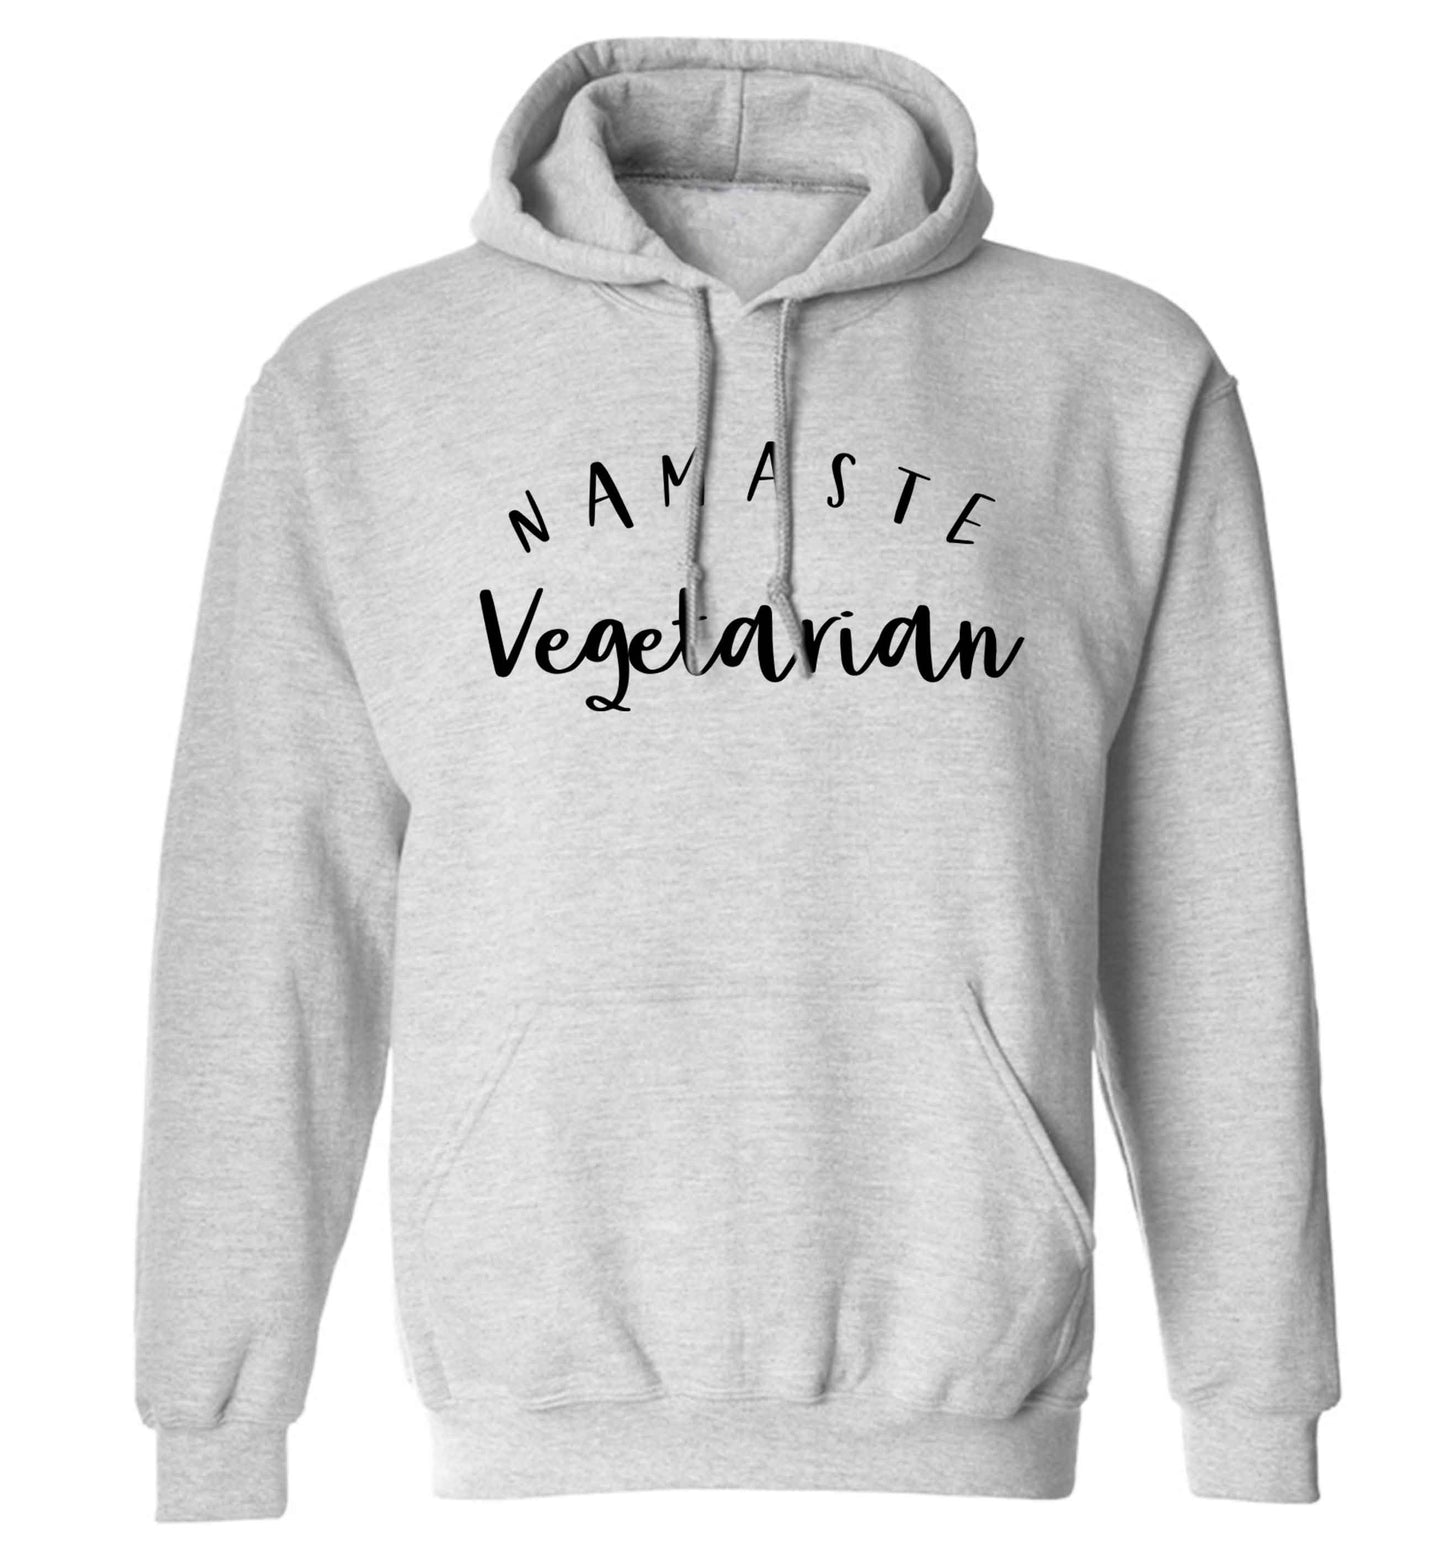 Namaste vegetarian adults unisex grey hoodie 2XL